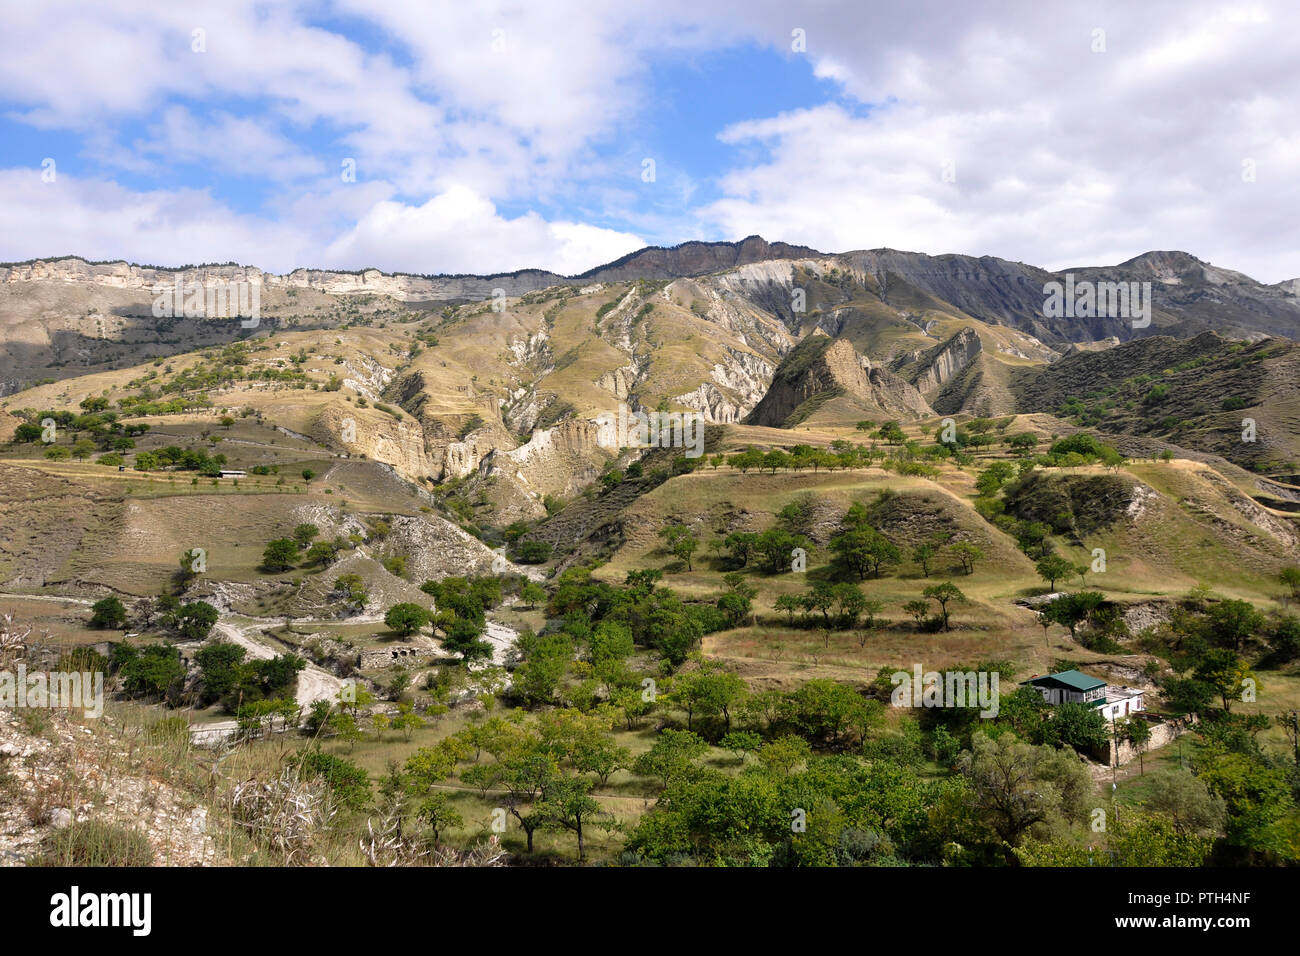 Russia, Dagestan, Salta area, landscape Stock Photo